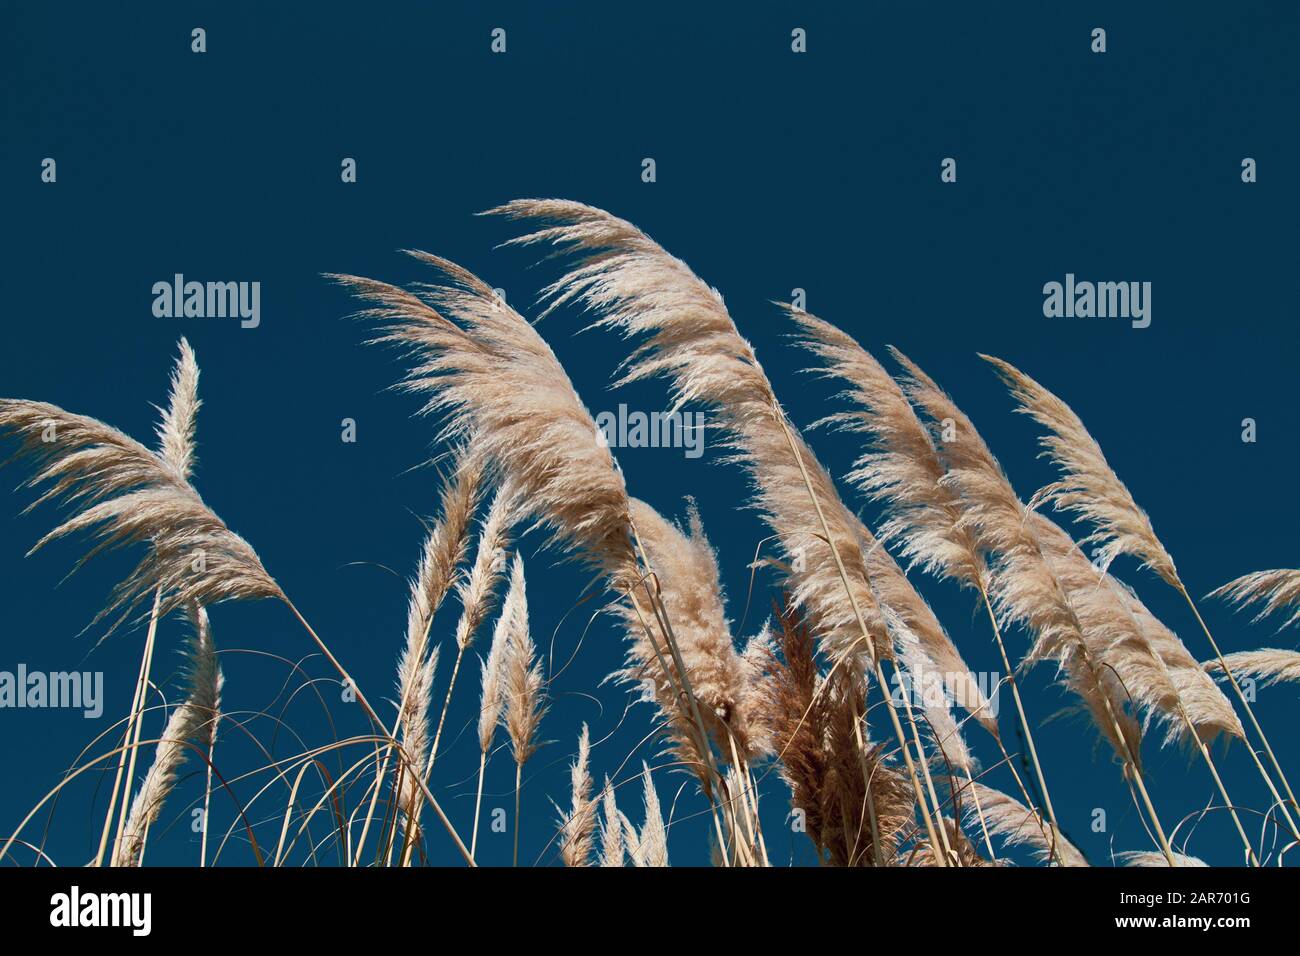 Reed vor dem blauen Himmel, Hintergrund, Nahaufnahme, horizontale Ausrichtung. Stockfoto